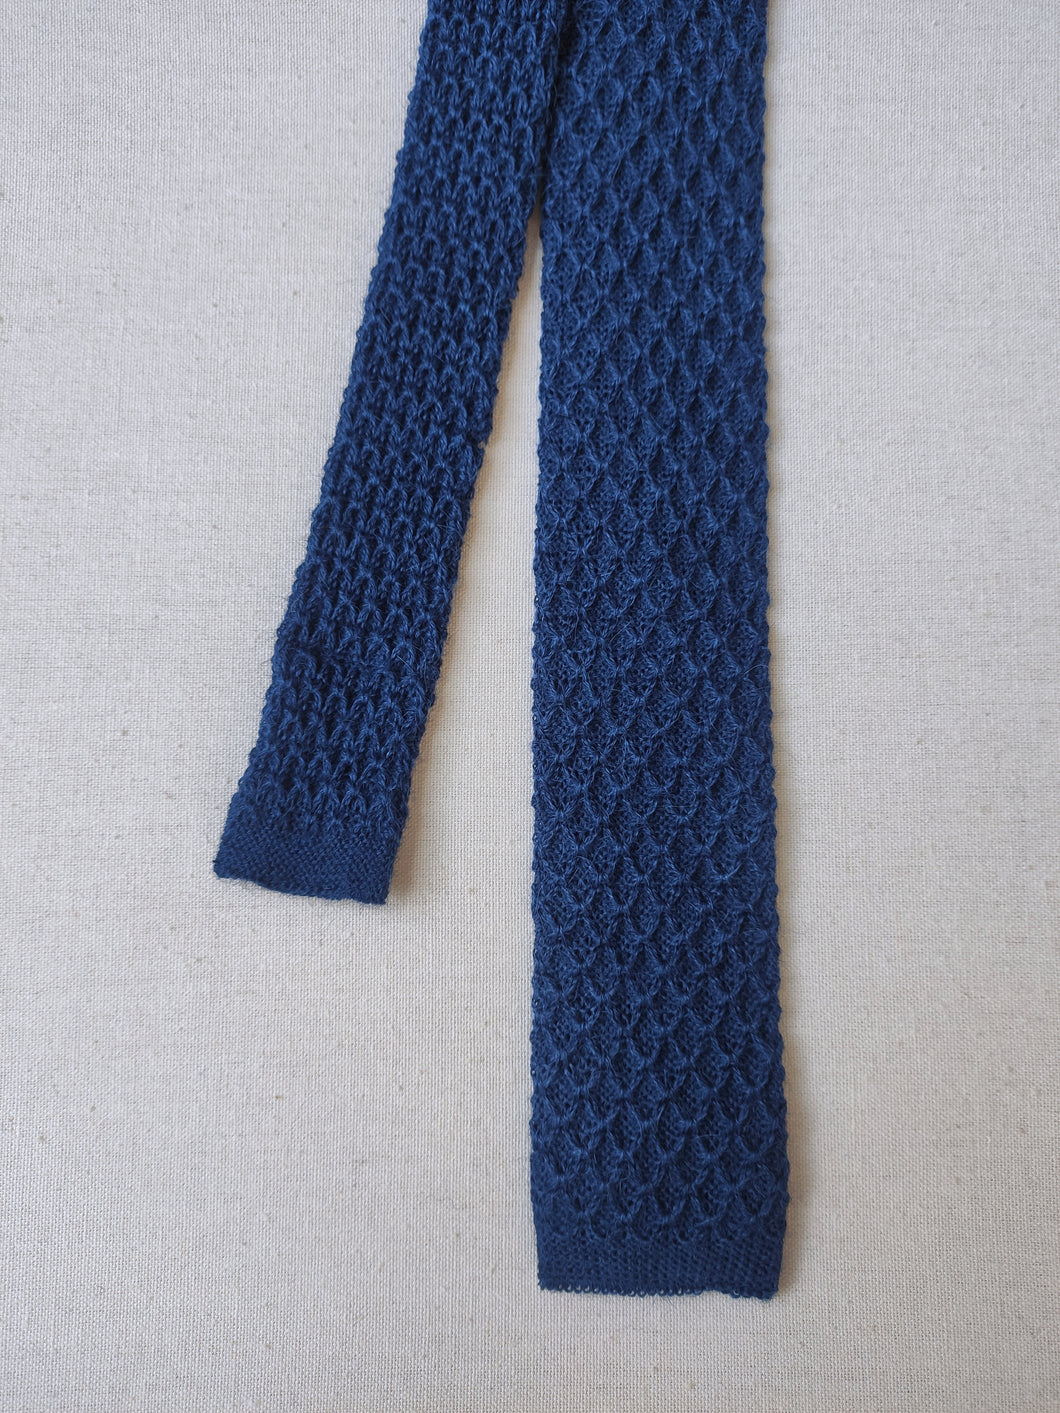 Burberrys cravate tricot vintage en laine mohair et alpaga Made in England